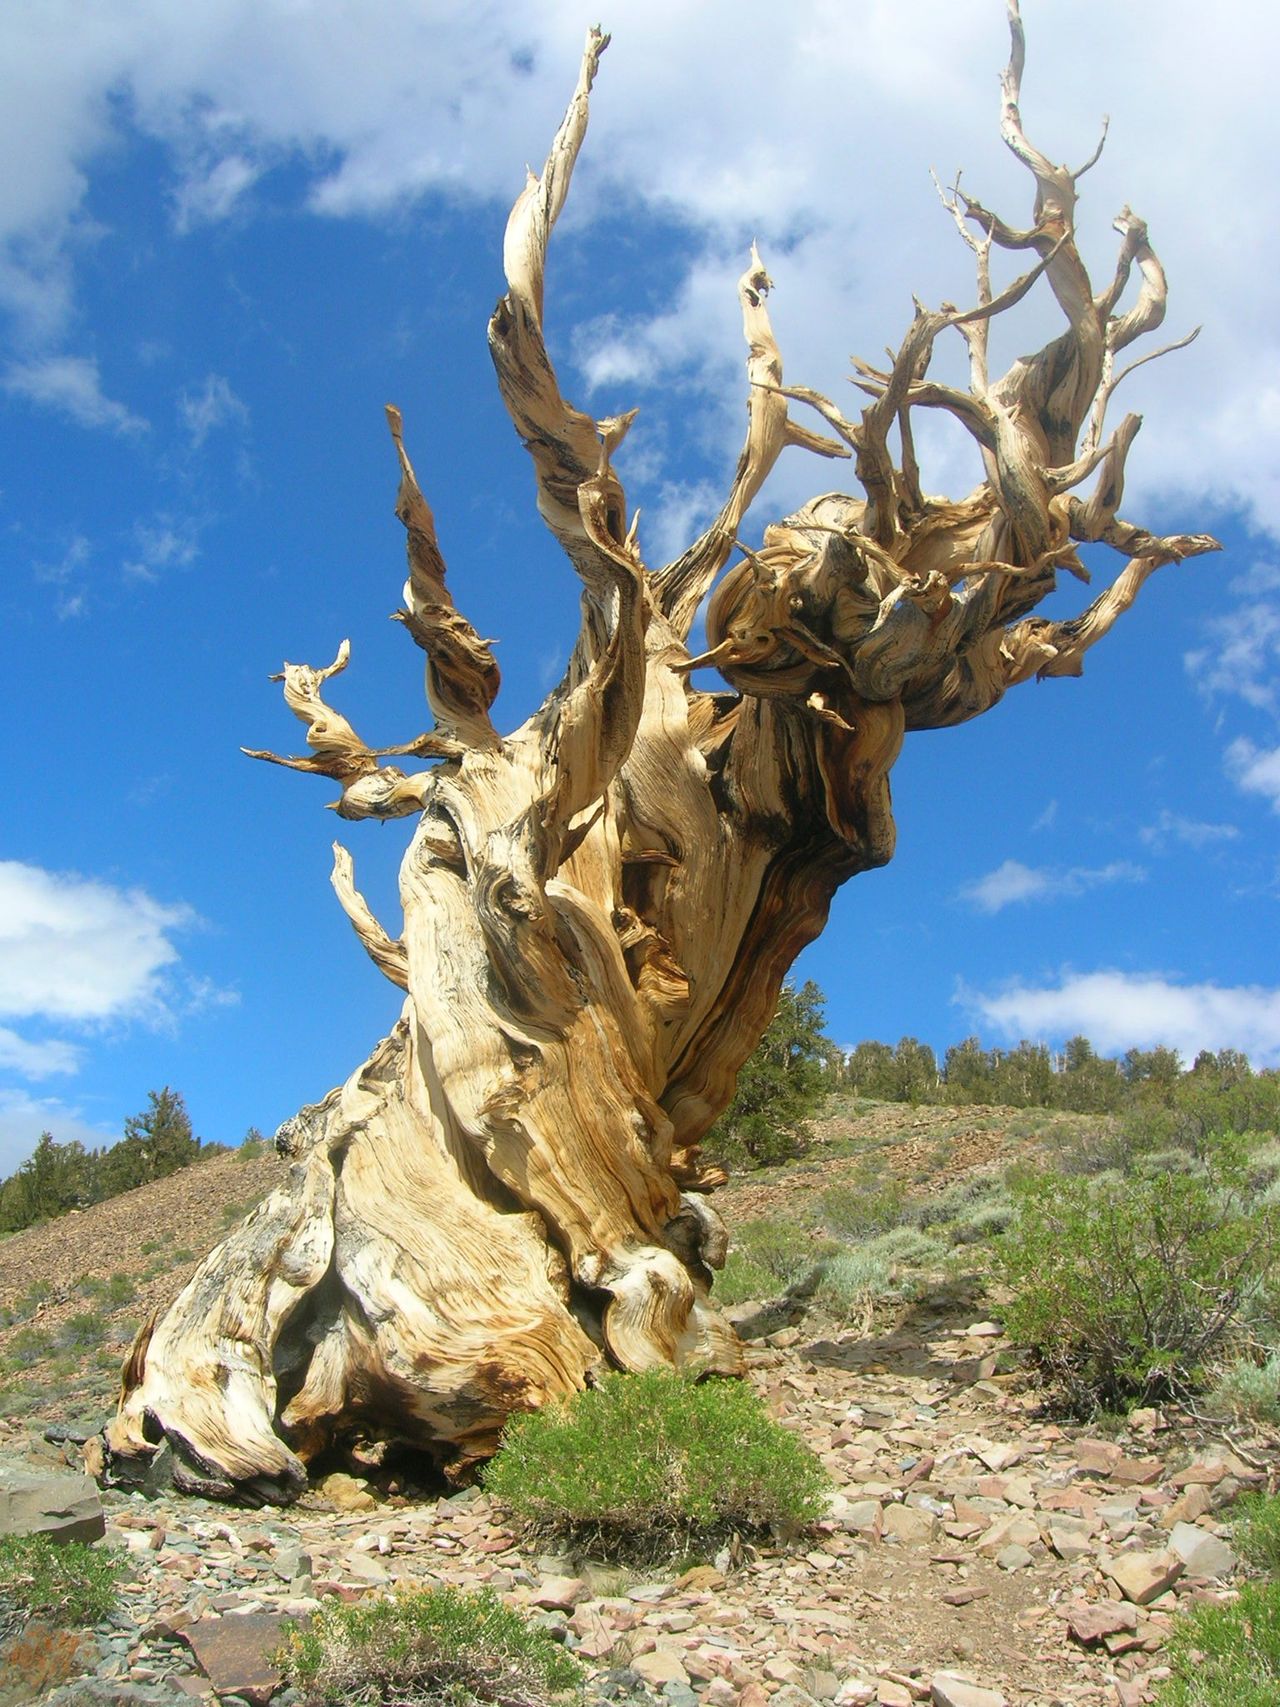 The world's oldest tree, Methuselah, in the California desert.